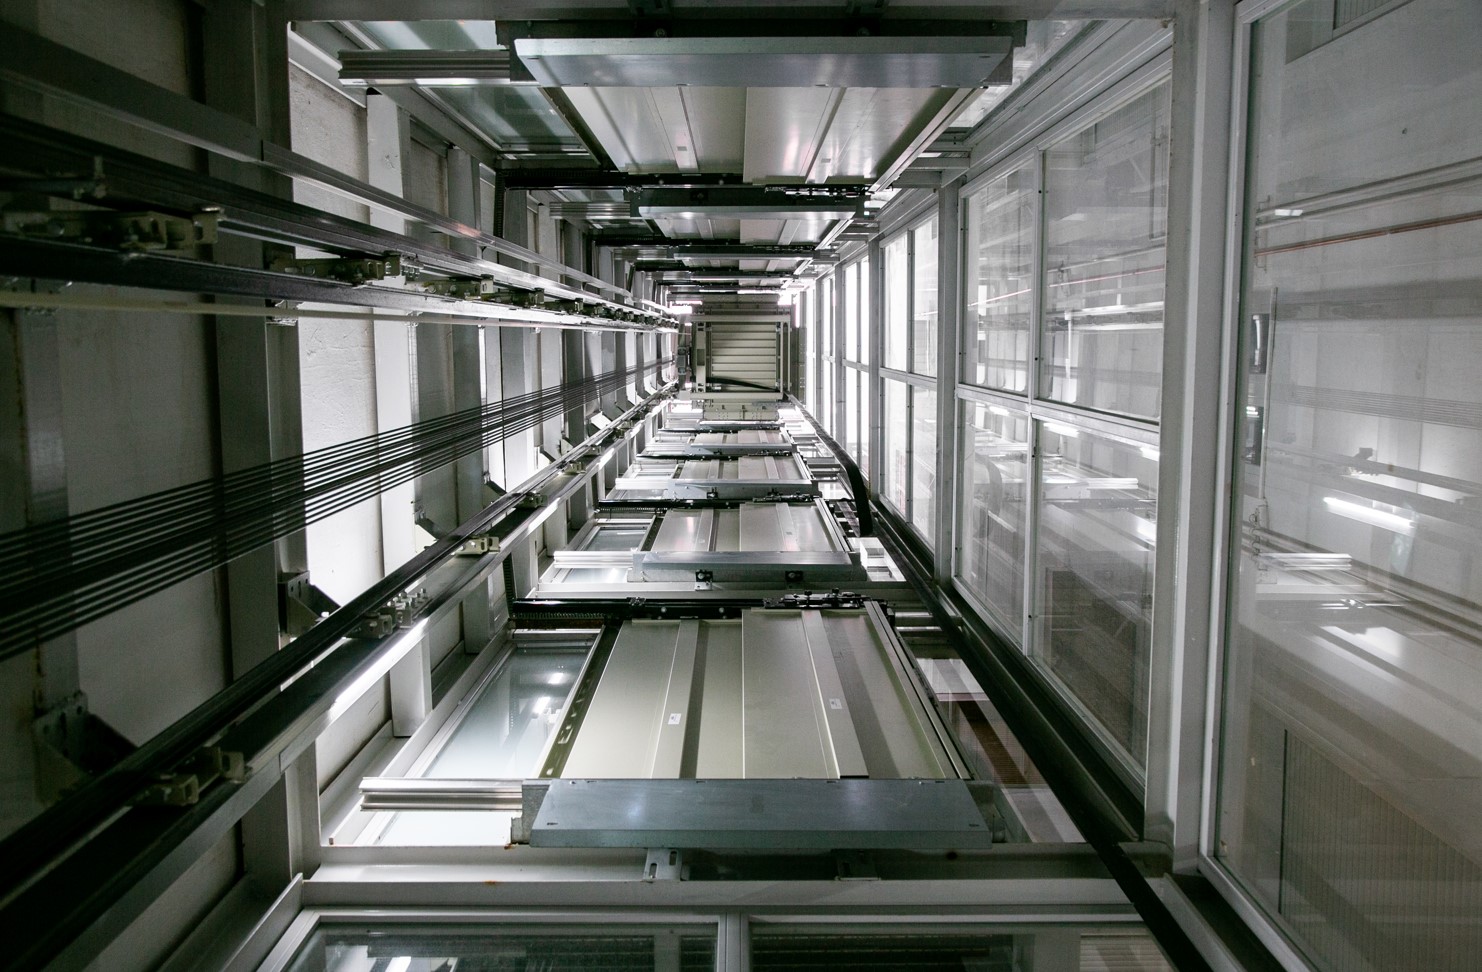 Imagen del hueco de ascensor visto desde abajo